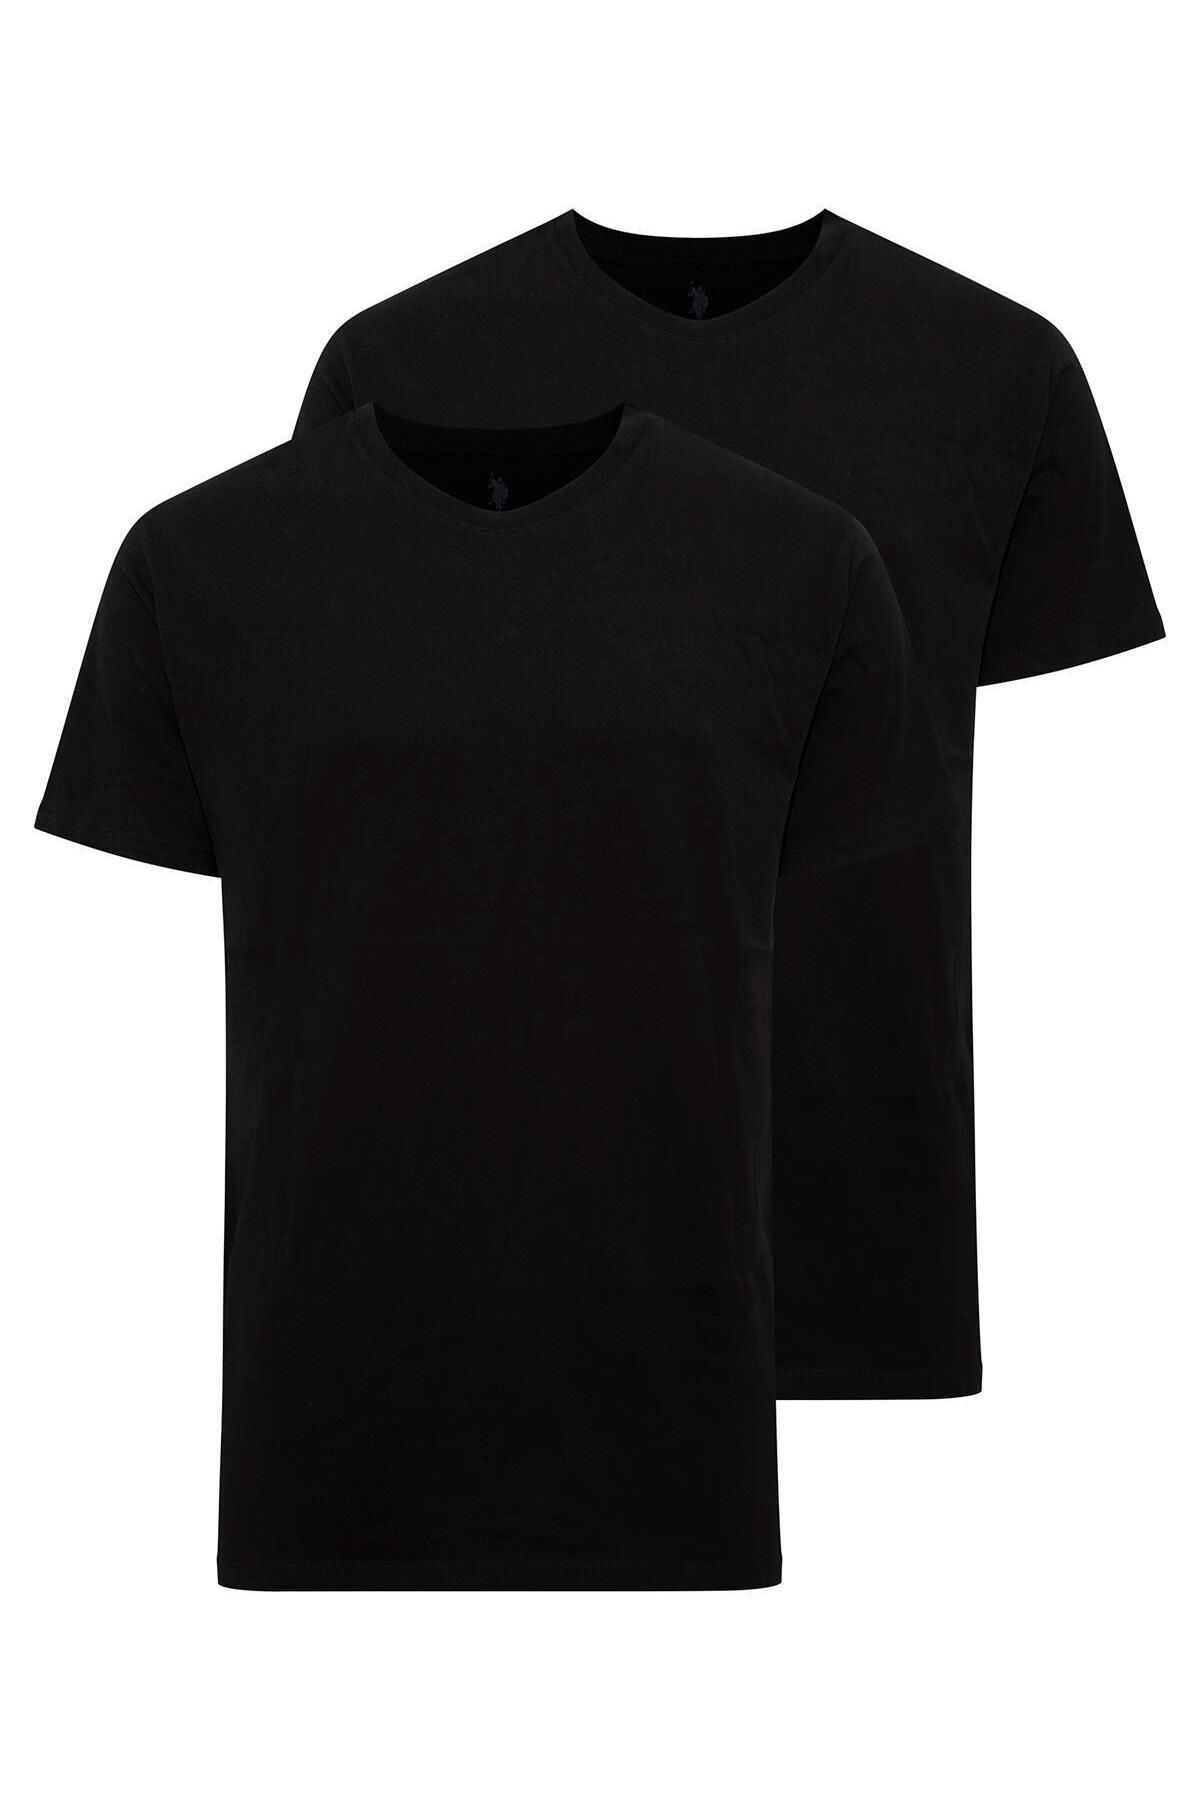 U.S. Polo Assn. - Erkek Battal Siyah 2 Li Yuvarlak Yaka T-shirt 90002